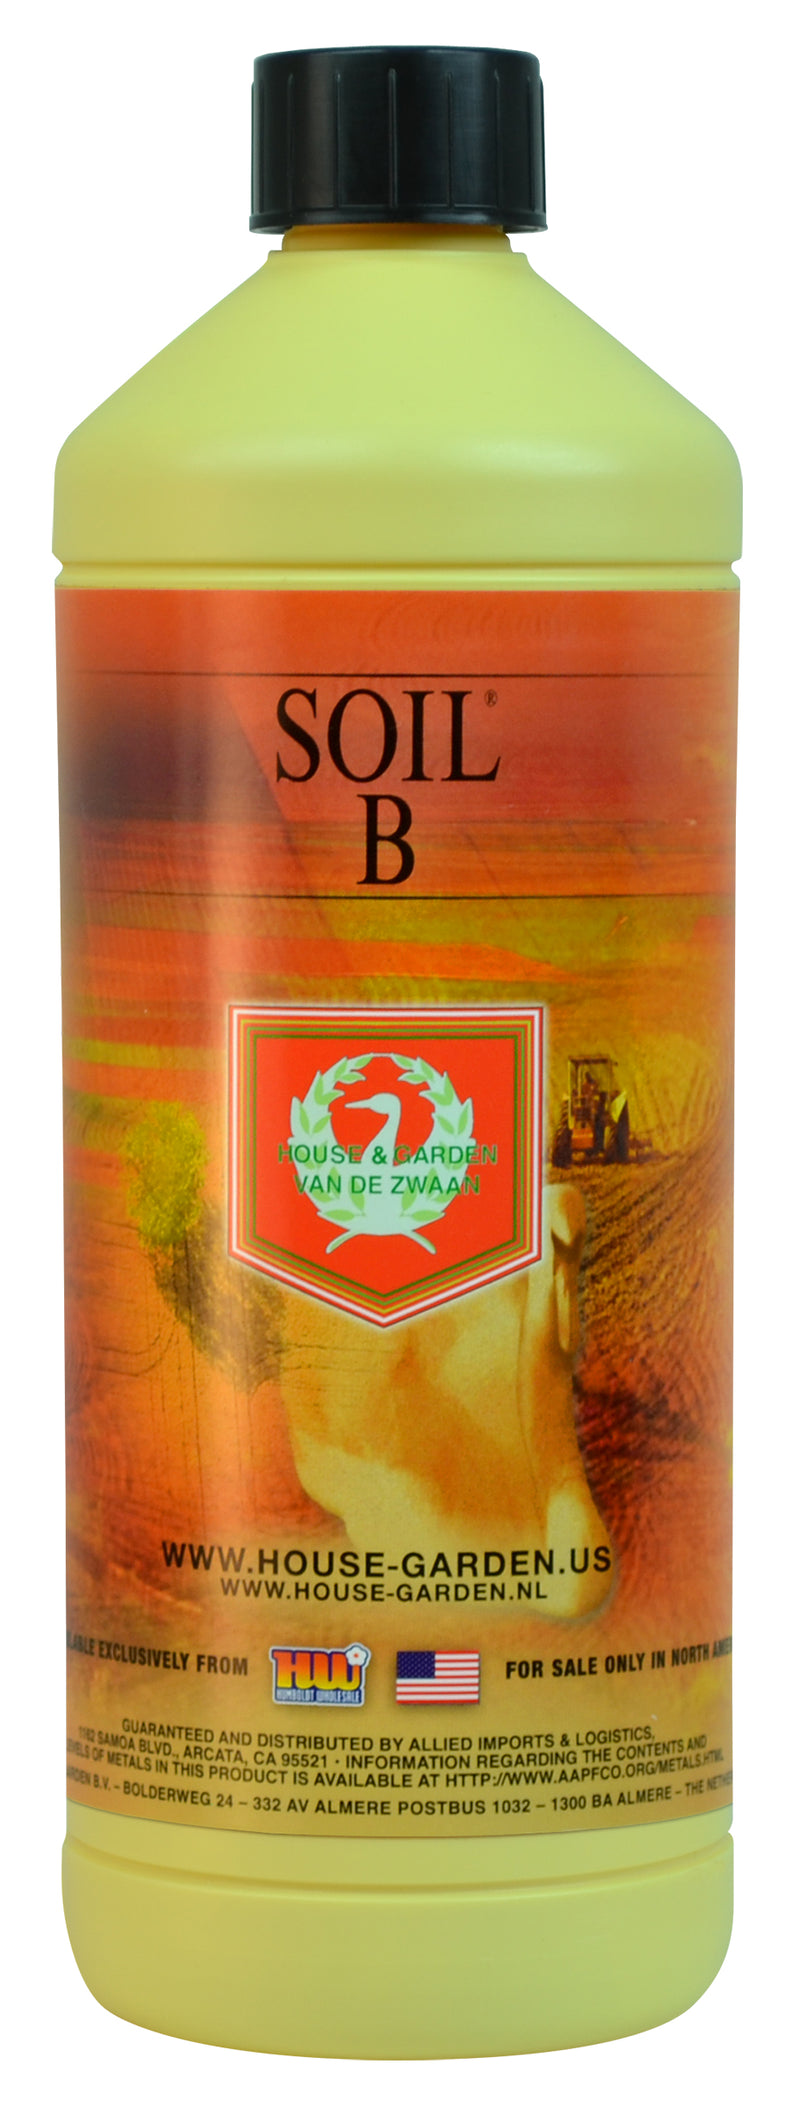 House and Garden Soil Nutrient B -- 1 Liter